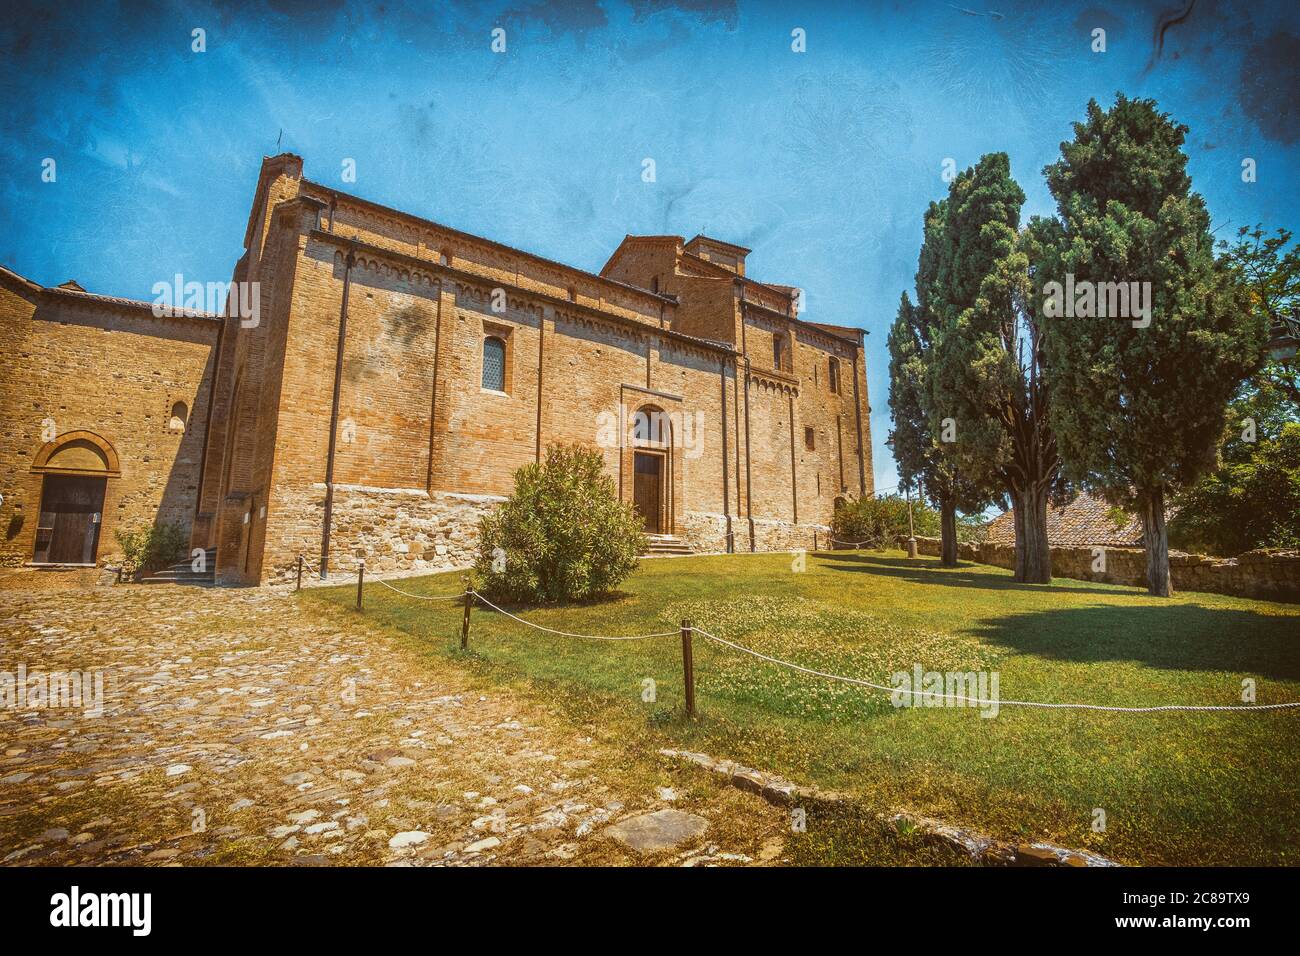 chiesa in italia effetto fotografico - Monteveglio - Bologna Foto Stock